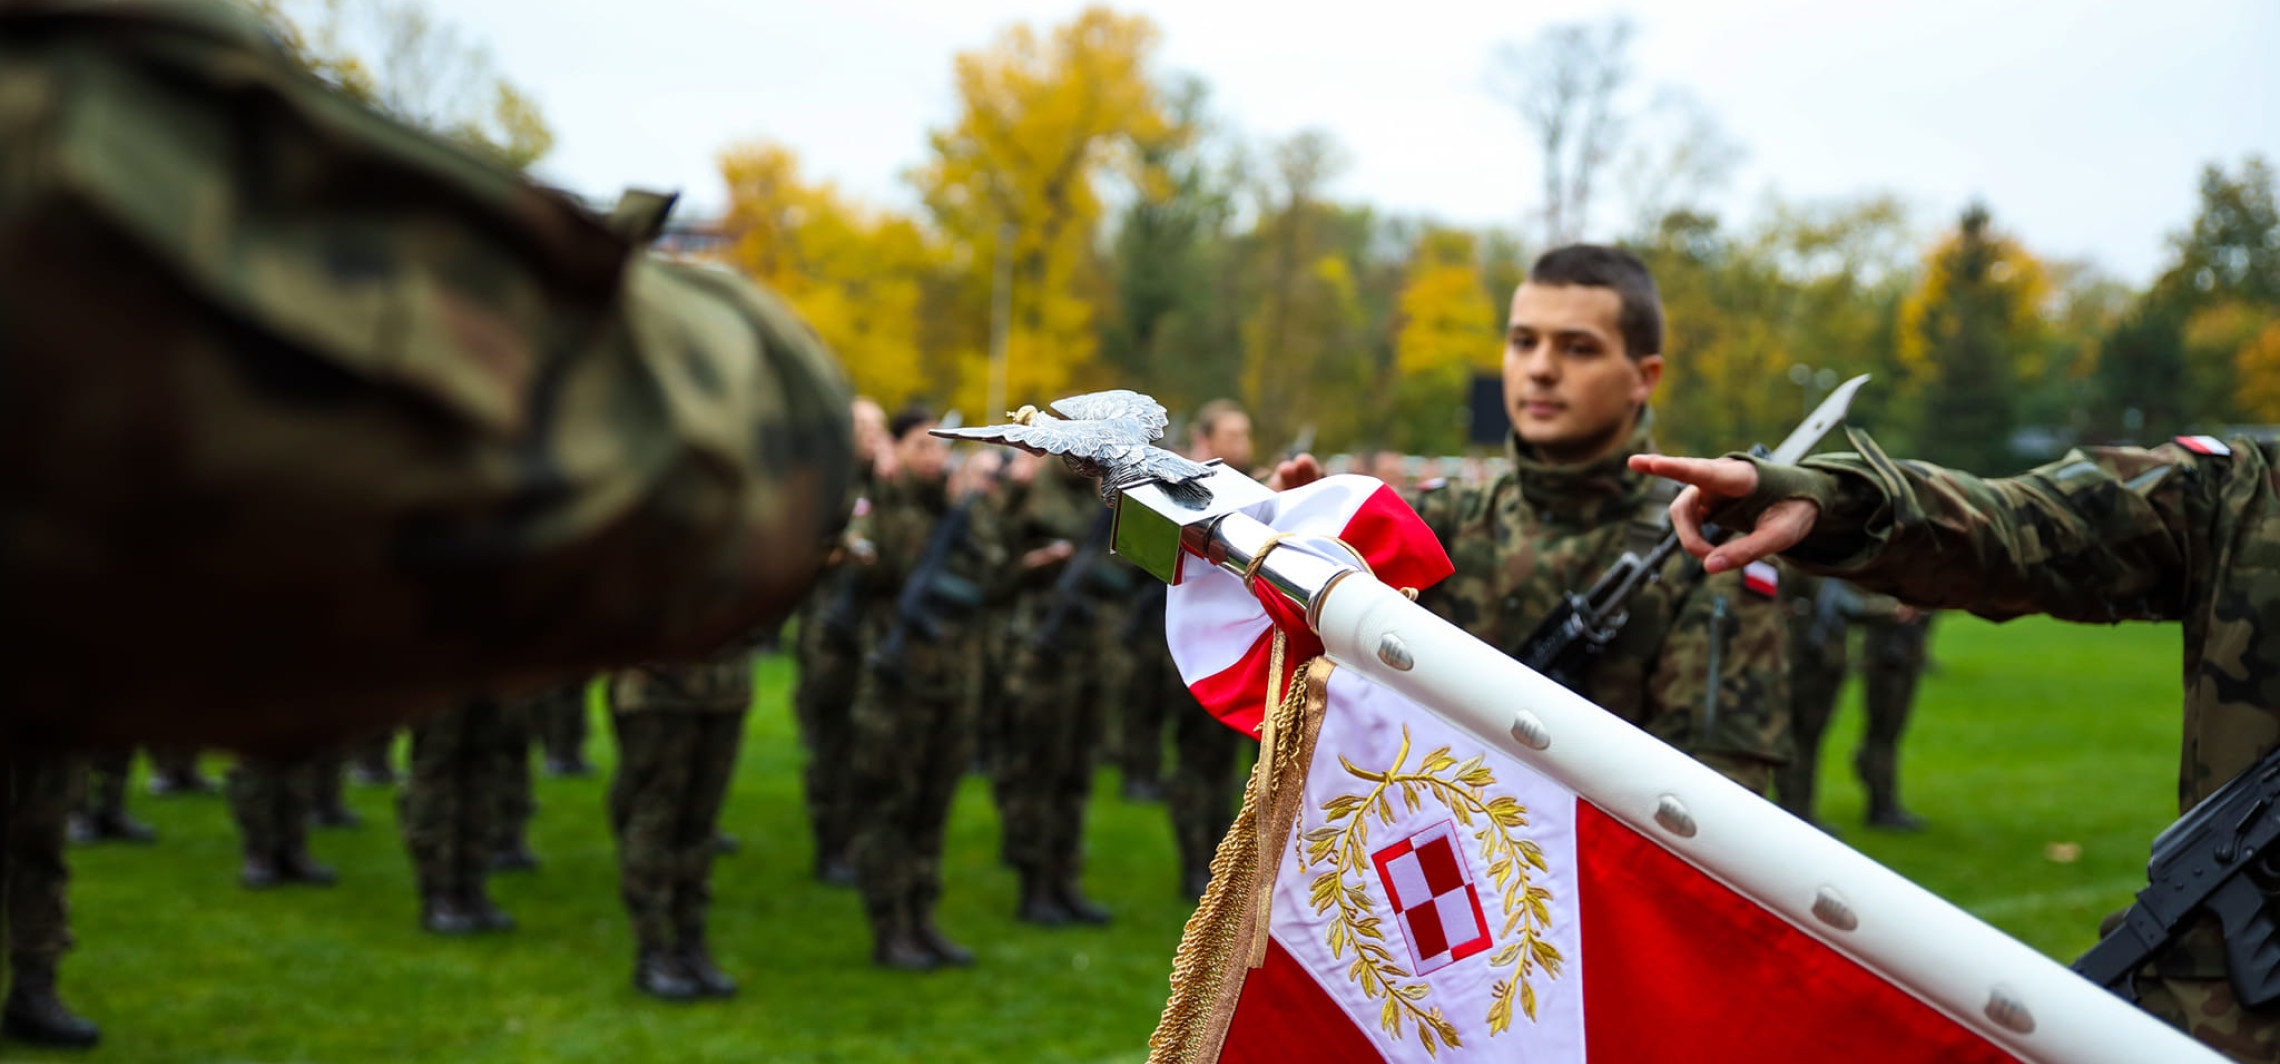 Inowrocław - Żołnierze złożyli uroczystą przysięgę